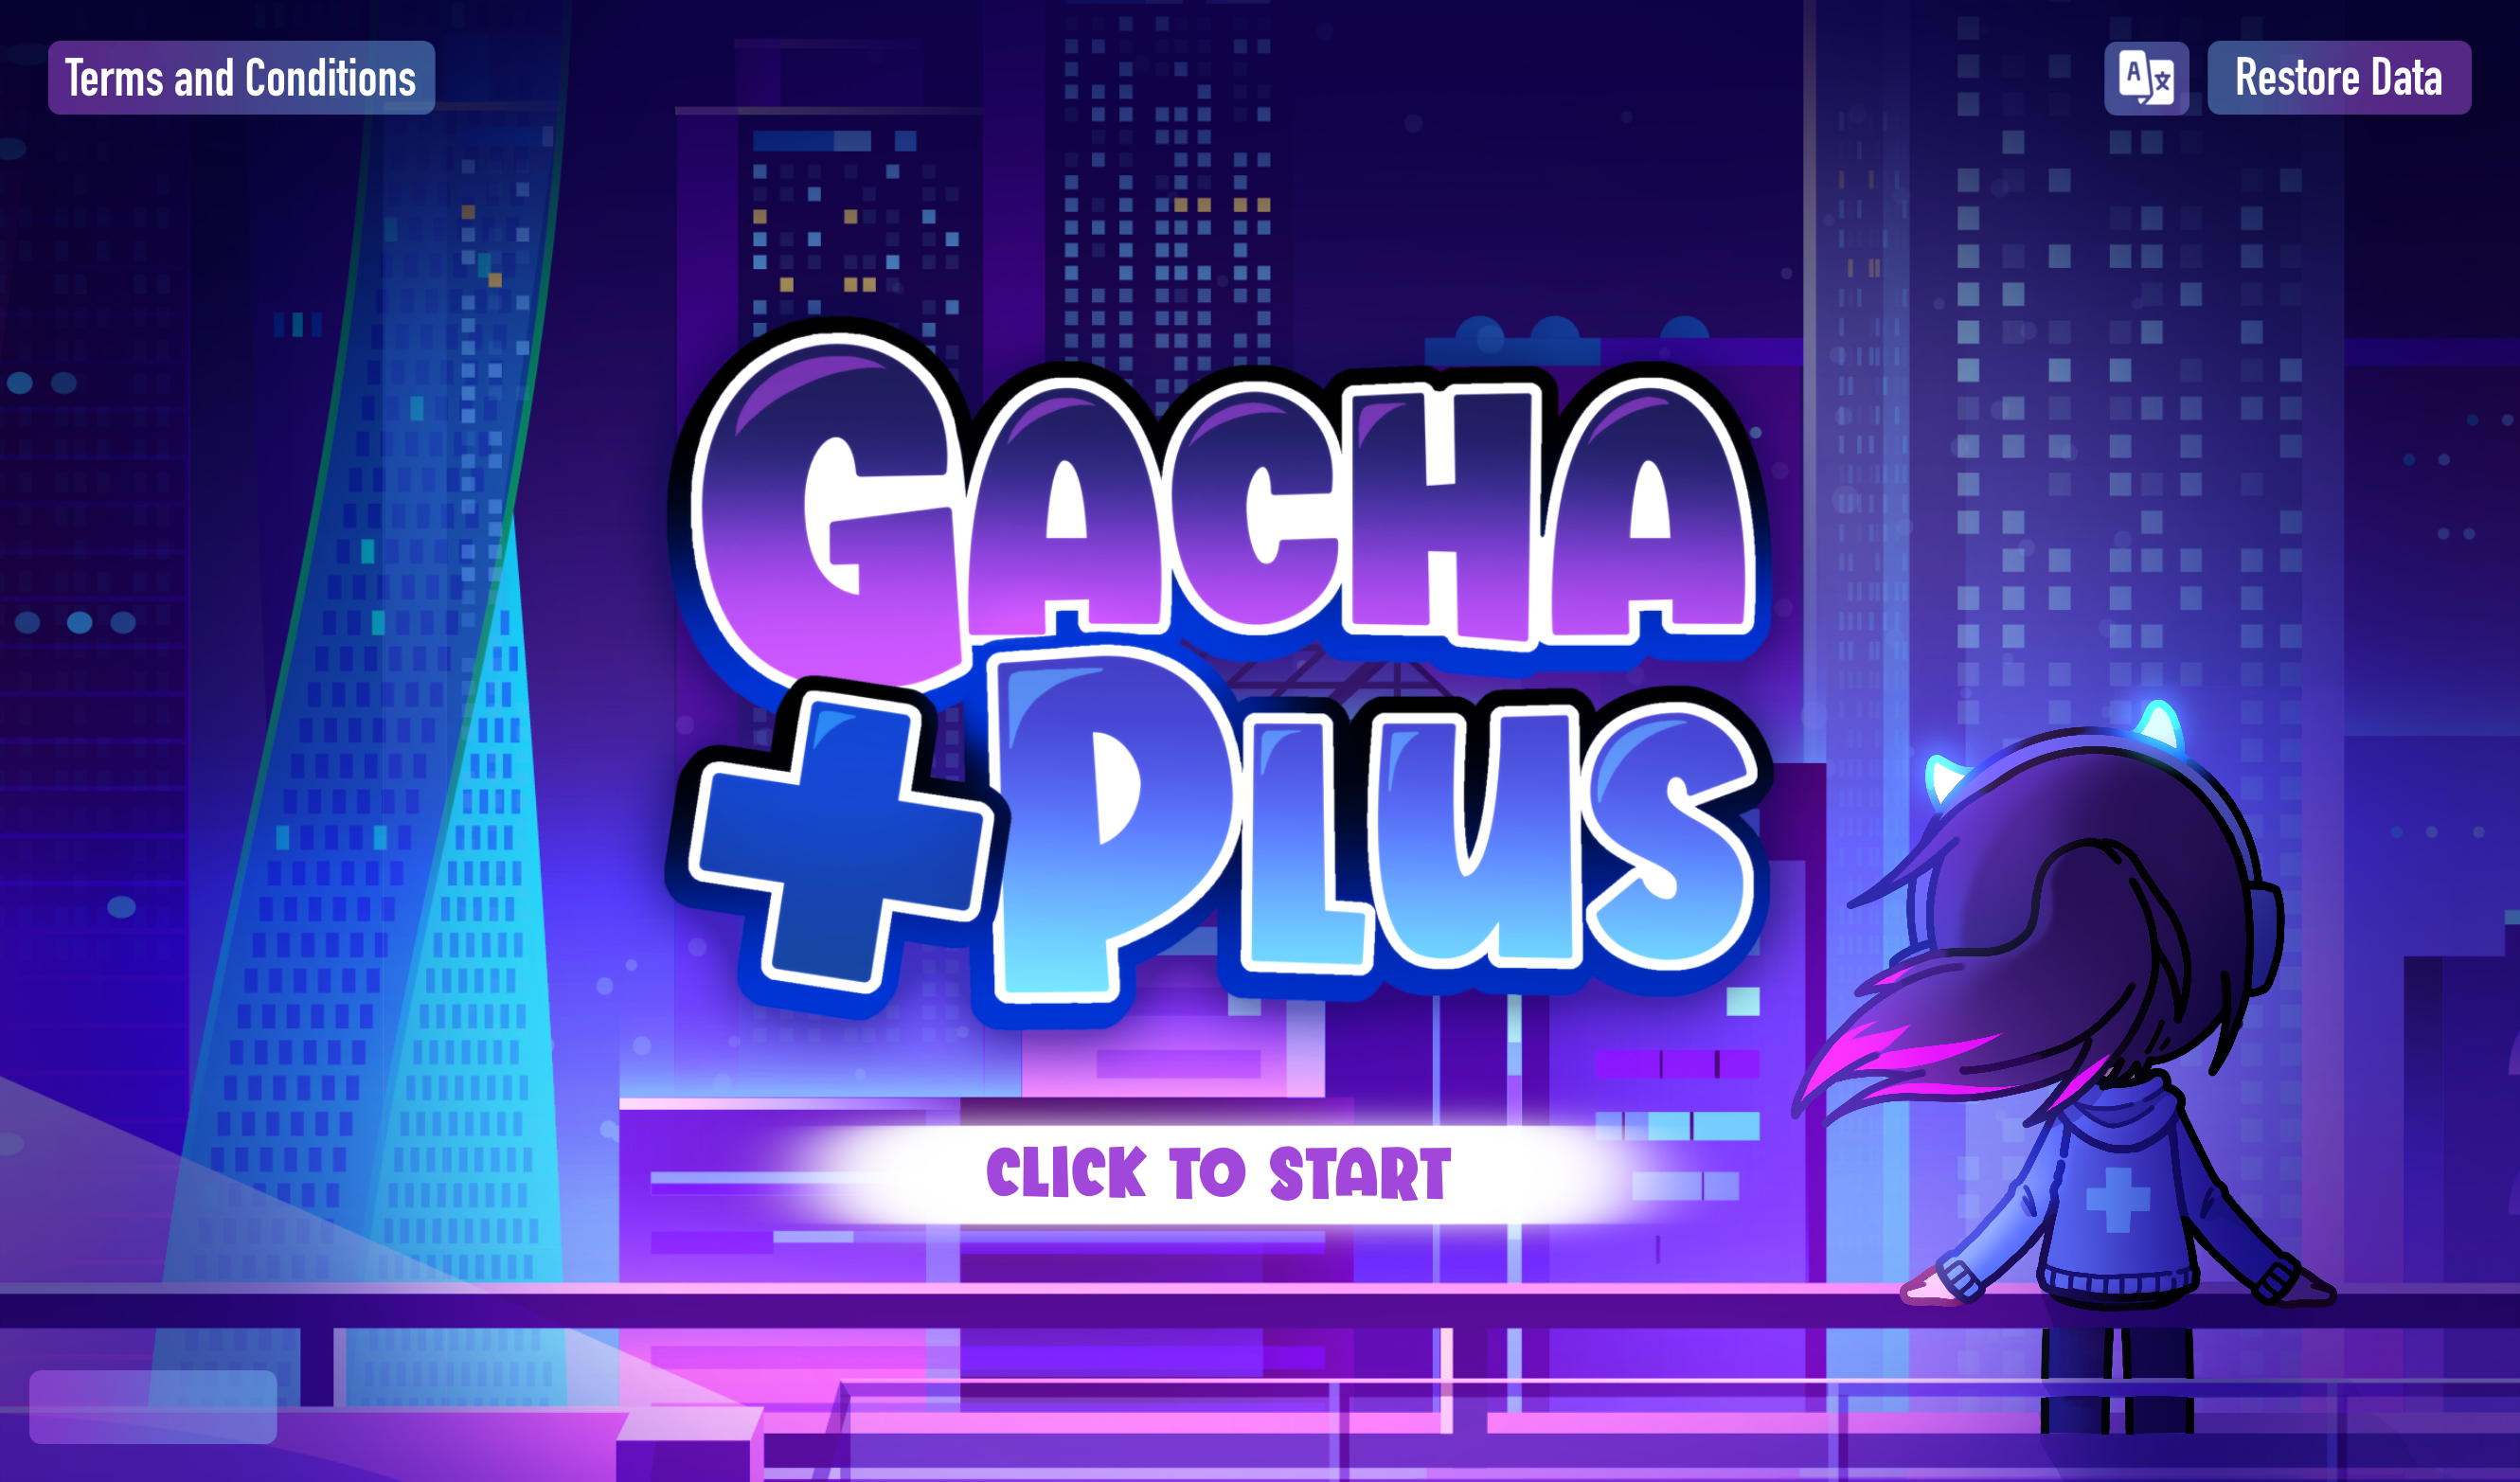 Gacha Plus by FémLol Stúdió